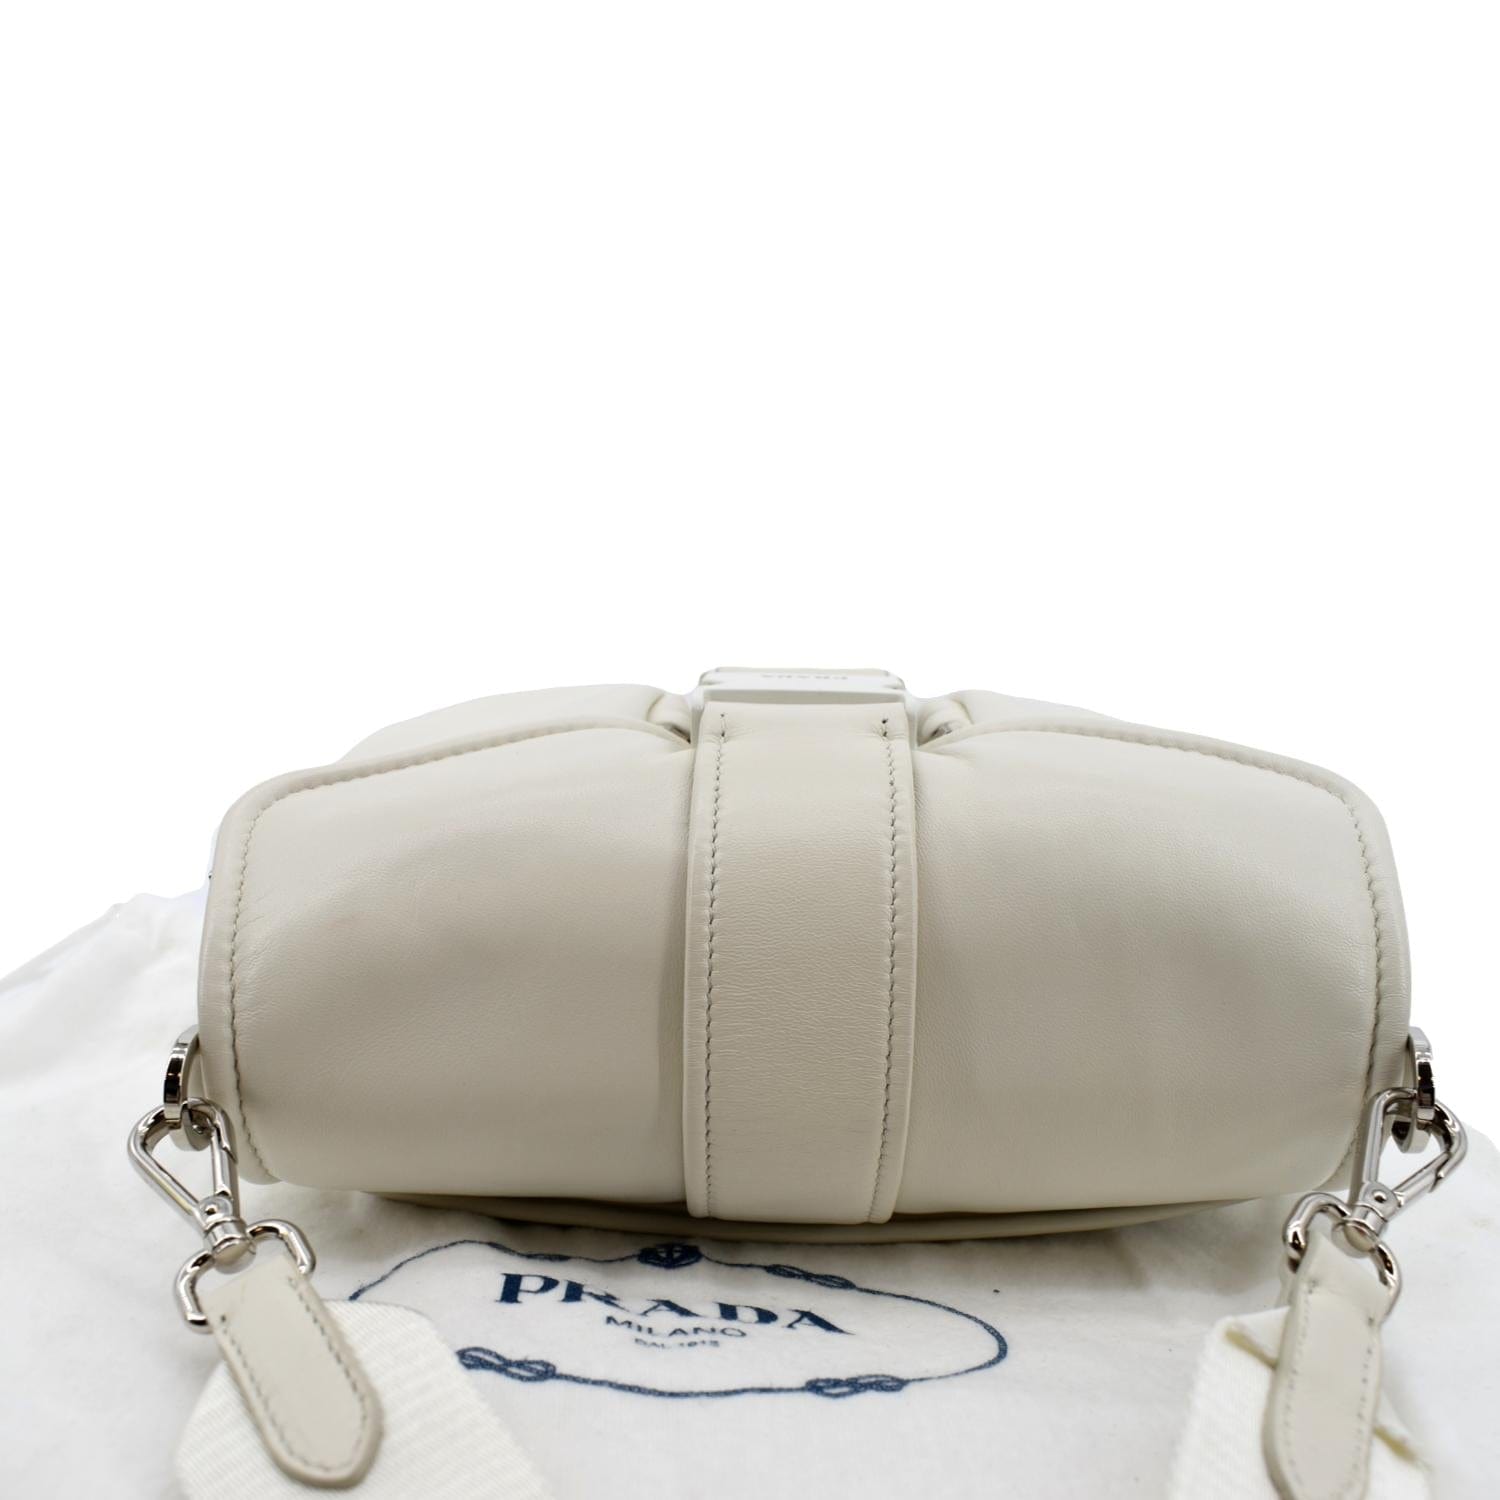 Nappa leather Pocket bag